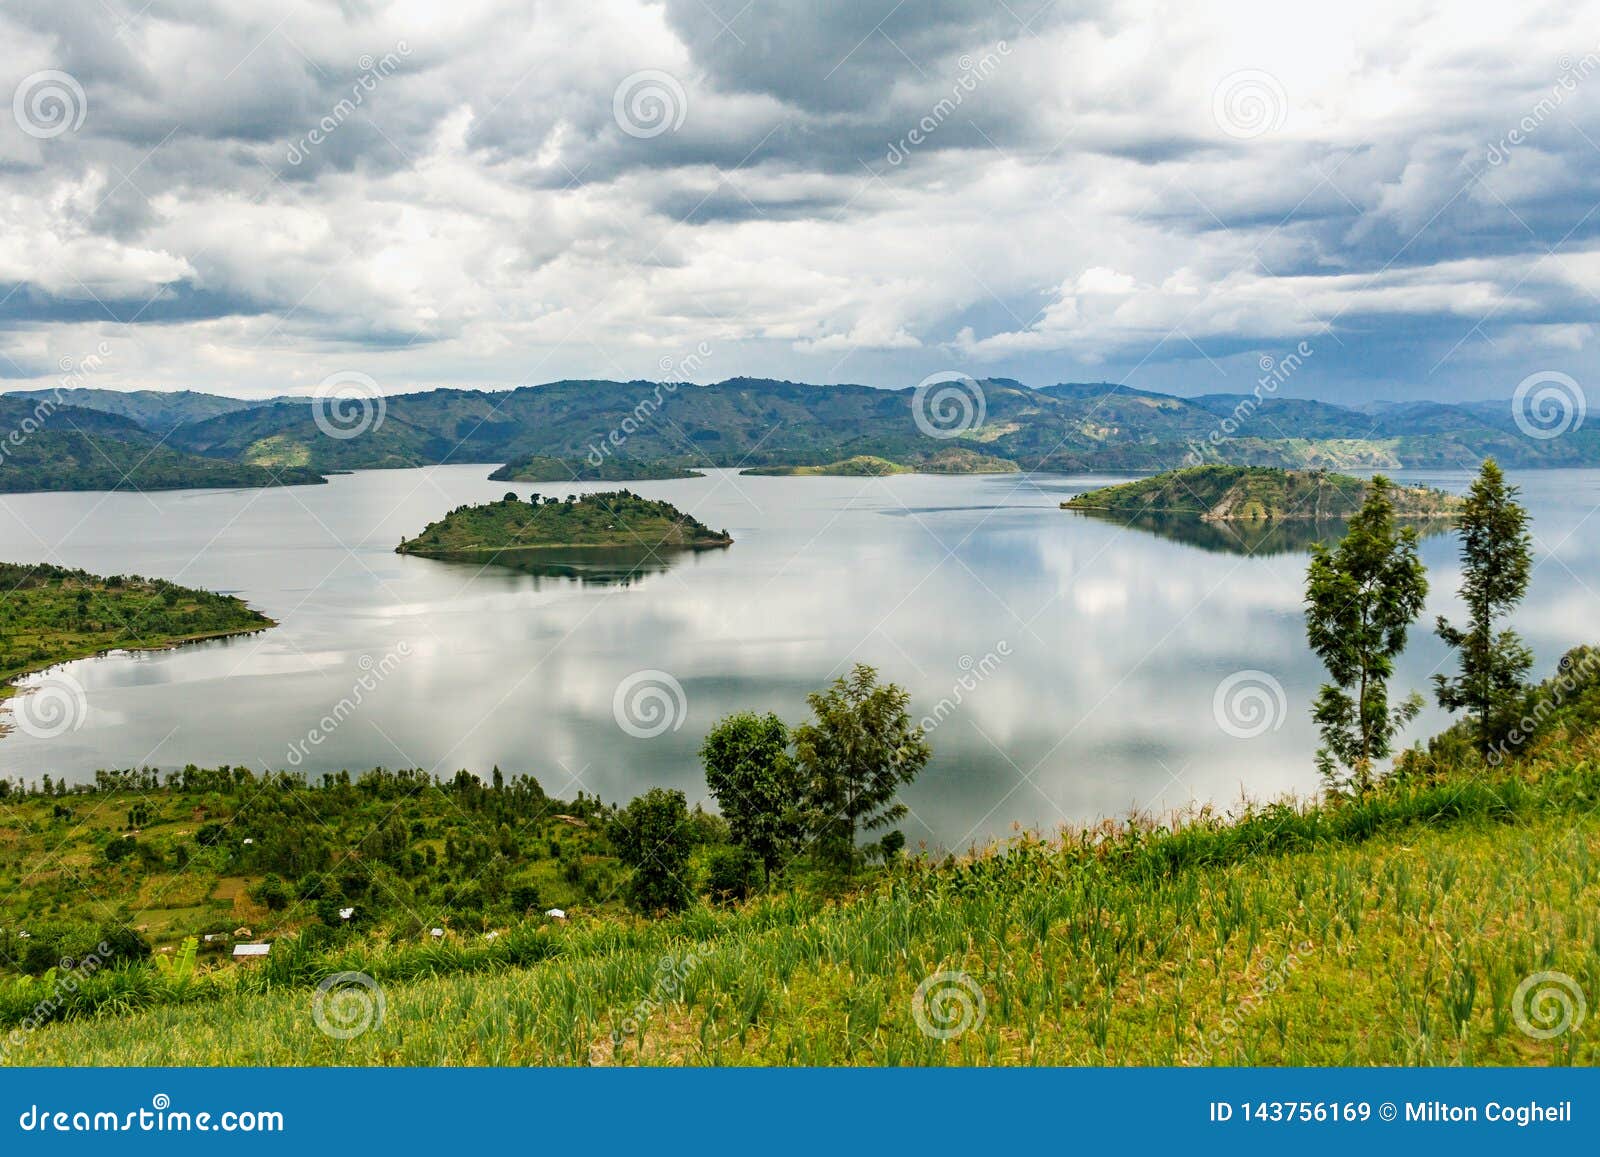 lake kivu in rwanda